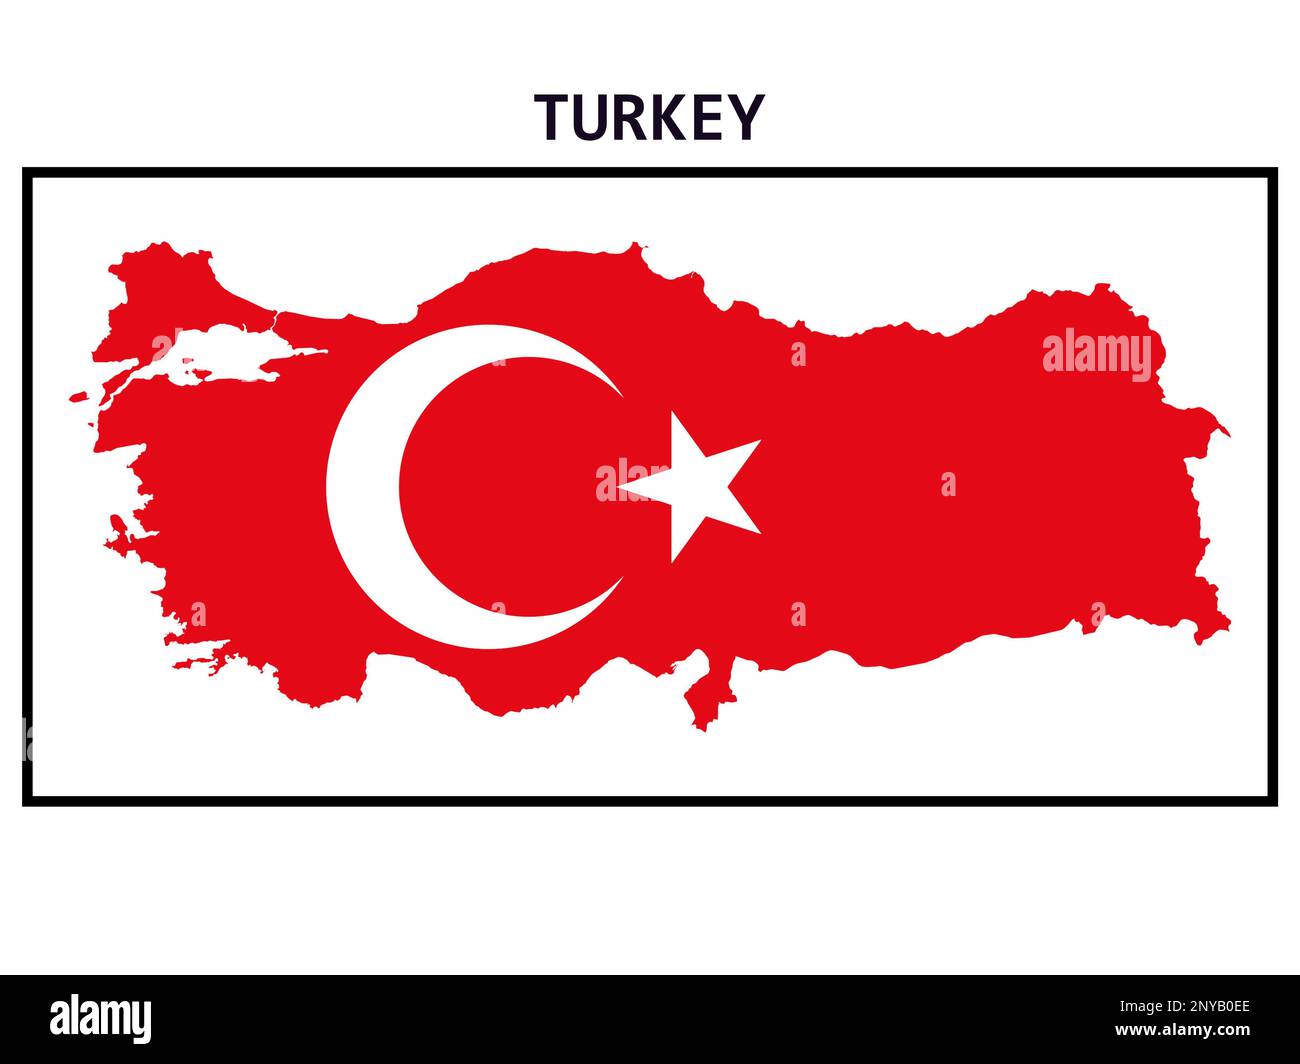 Carte de la Turquie avec drapeau national turc. Illustration de la lune en croissant et de l'étoile sur fond rouge. Banque D'Images